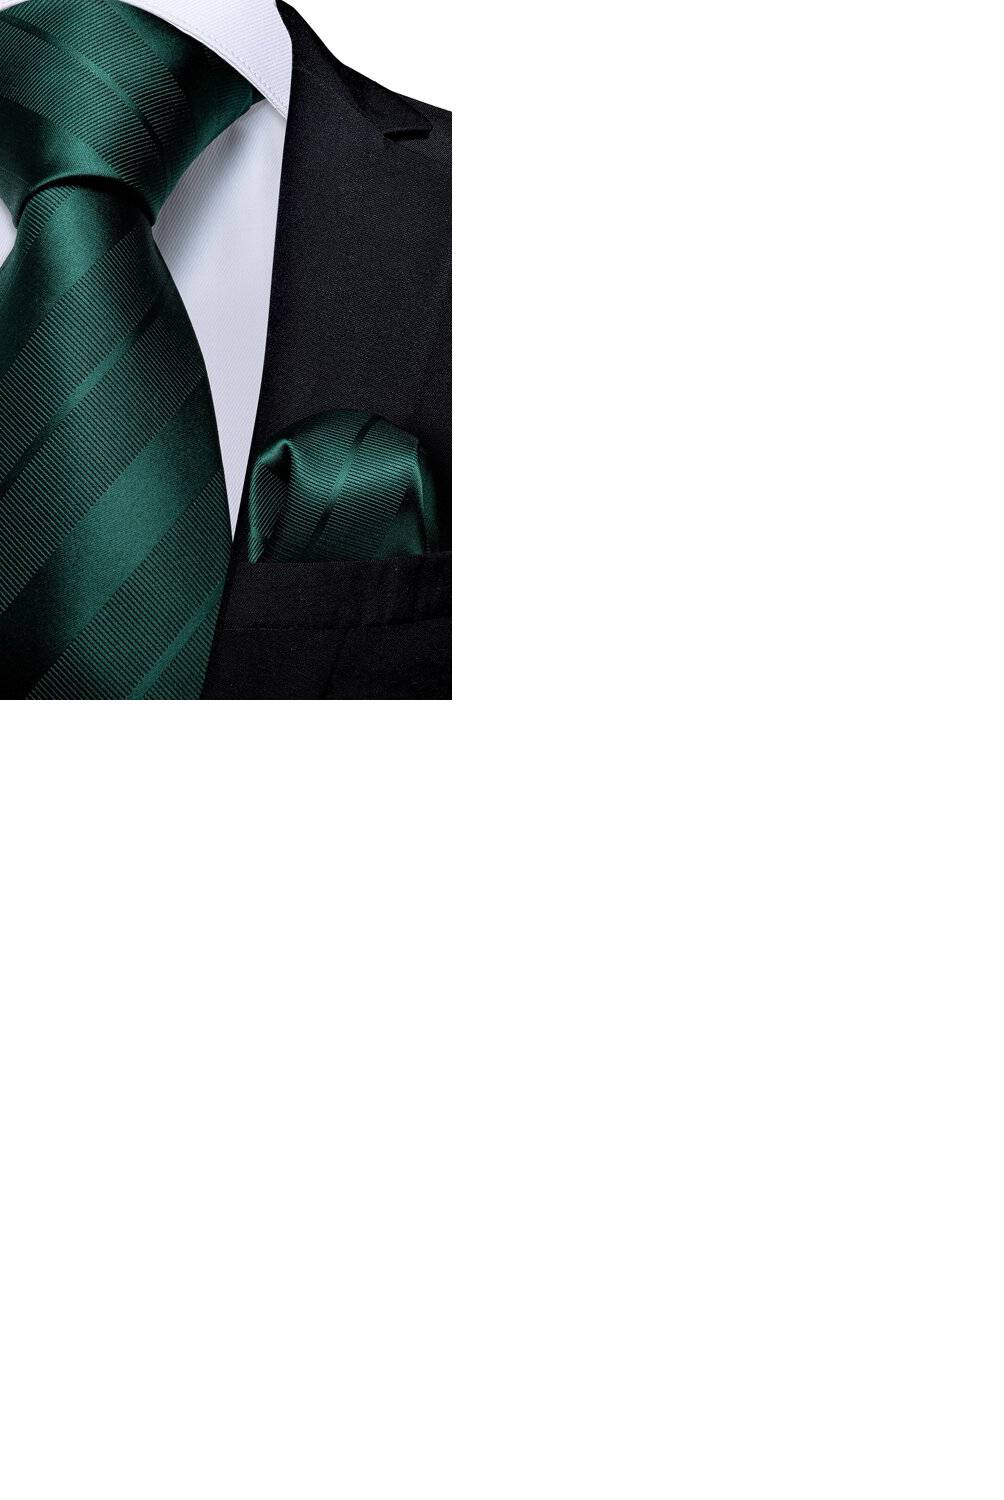 SONEC FASHION - Set Corbata Hombres  paño y gemelos. Emerald